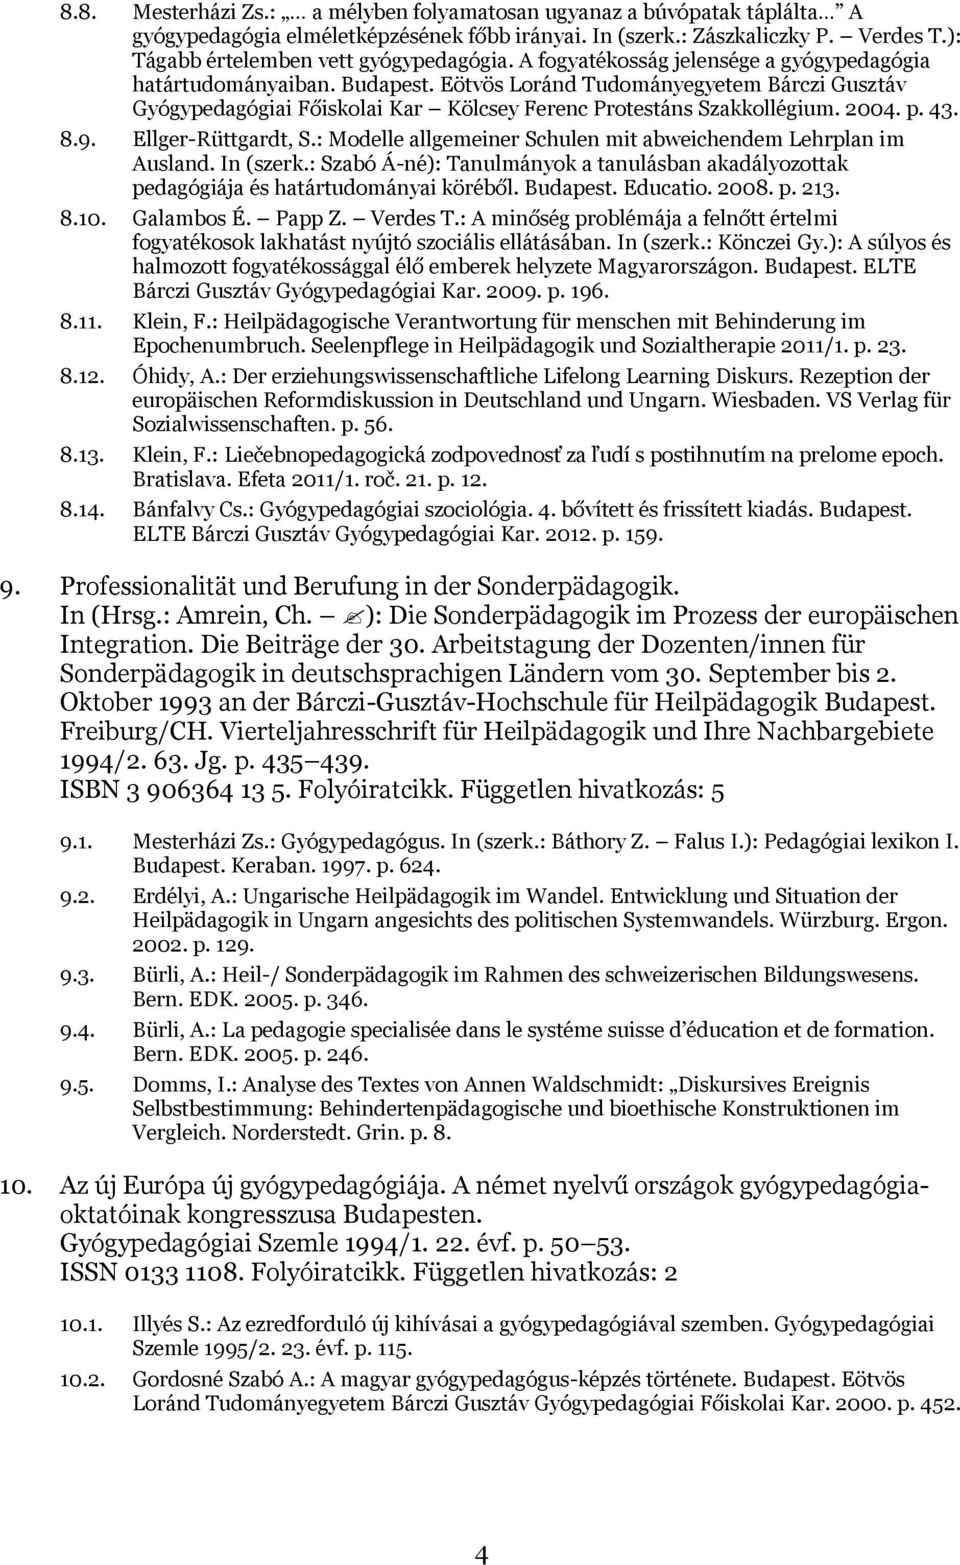 43. 8.9. Ellger-Rüttgardt, S.: Modelle allgemeiner Schulen mit abweichendem Lehrplan im Ausland. In (szerk.